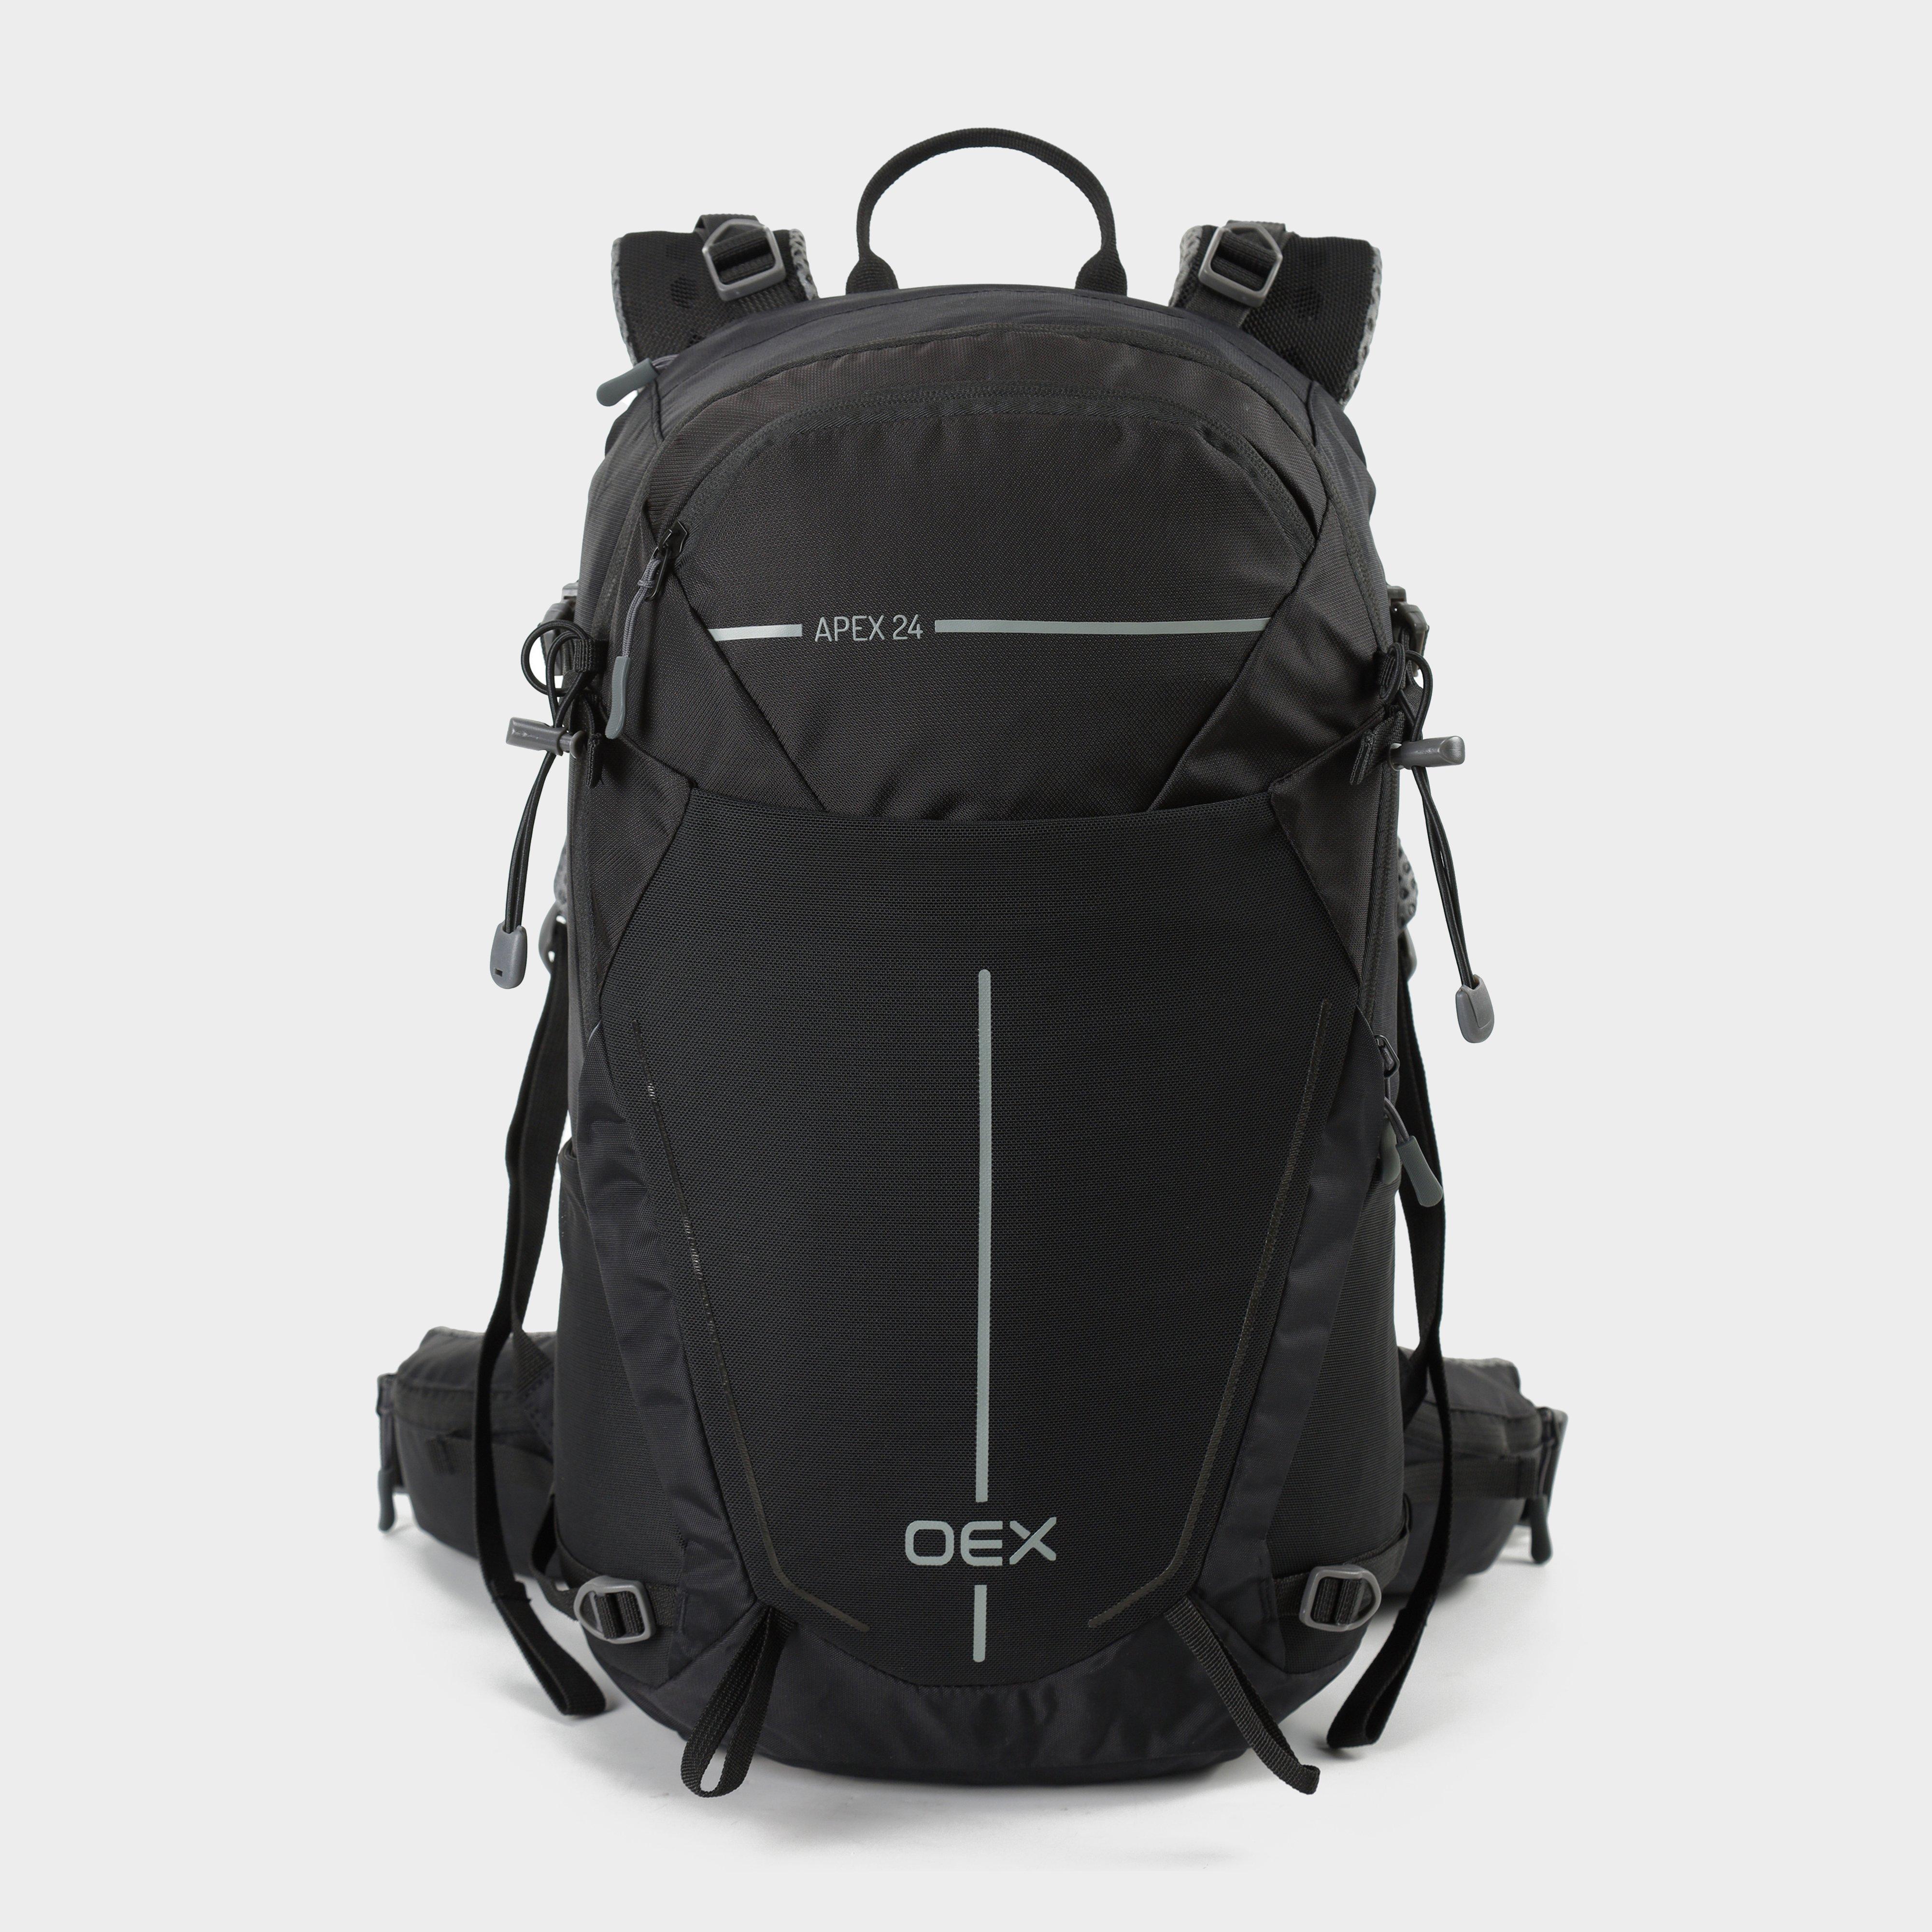 OEX Oex Apex 24L Backpack - Blk, BLK